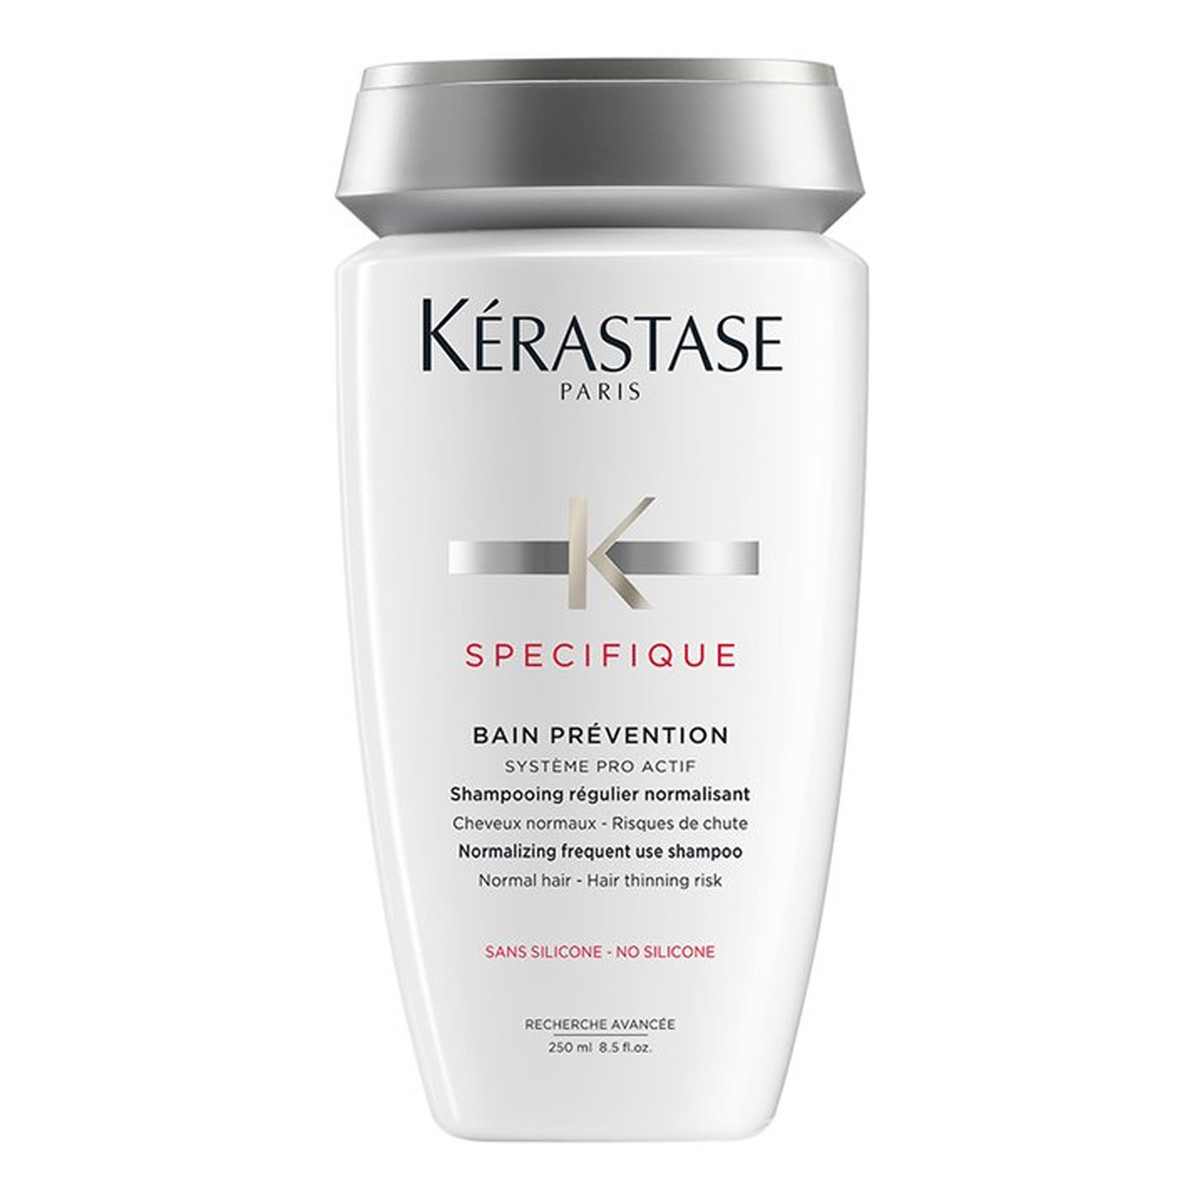 Kerastase Specifique normalizujący szampon do włosów 250ml